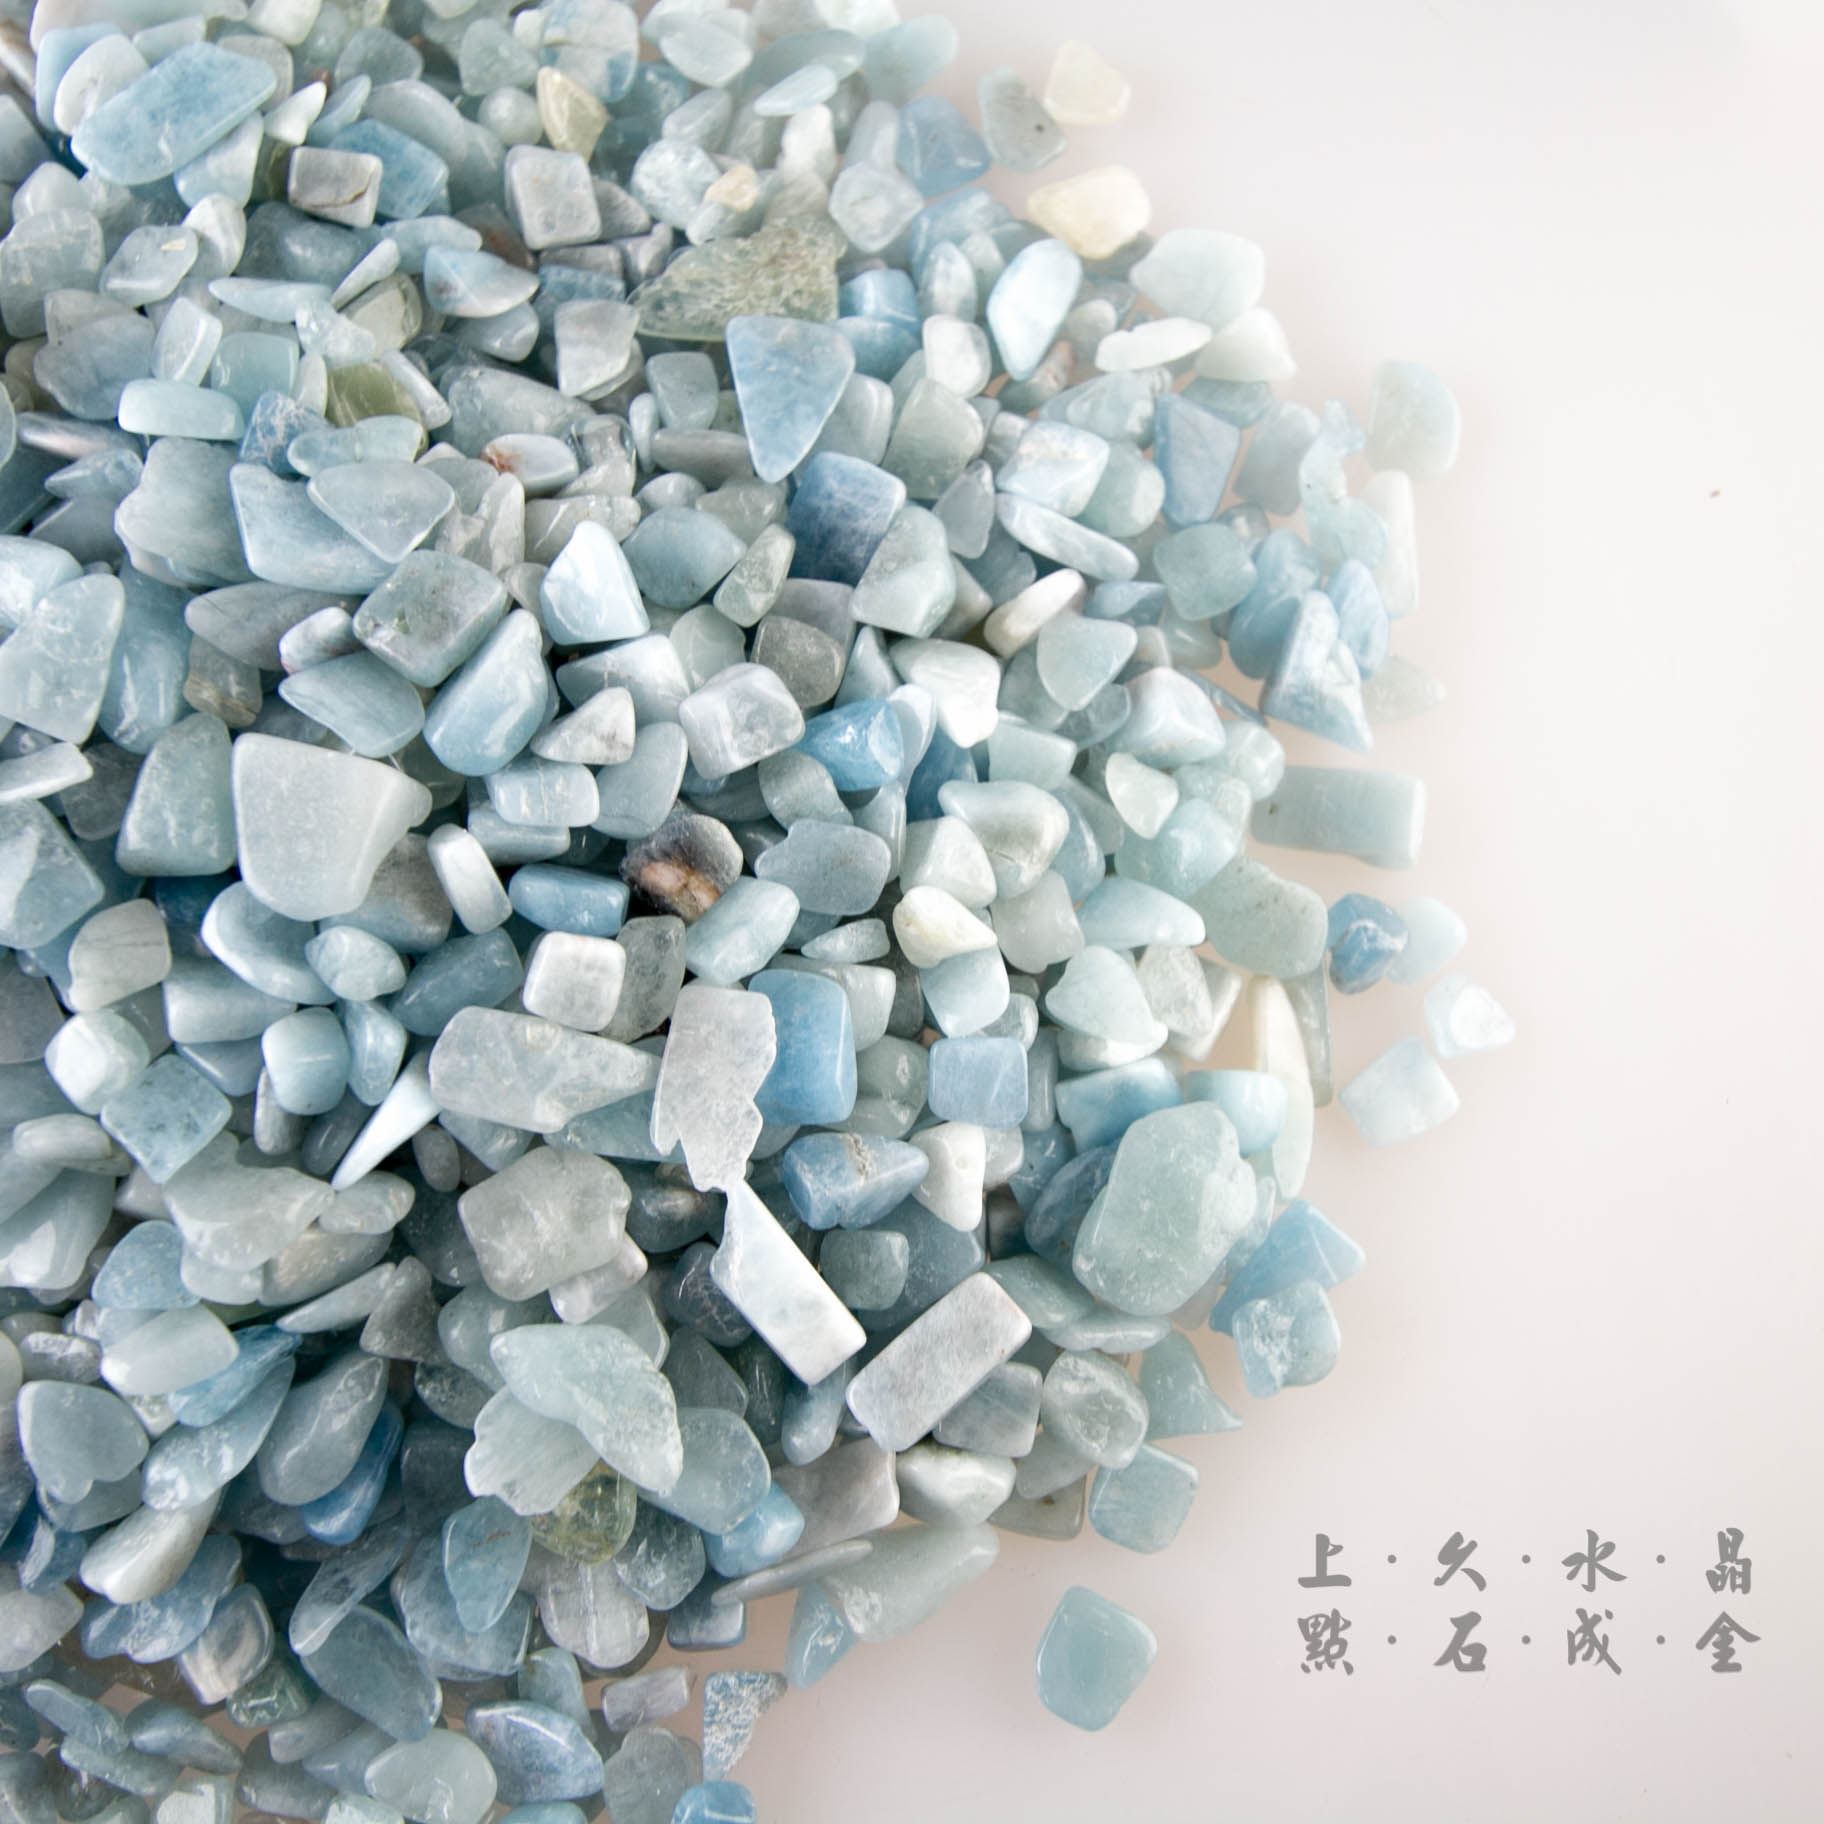 海藍寶碎石料1公斤